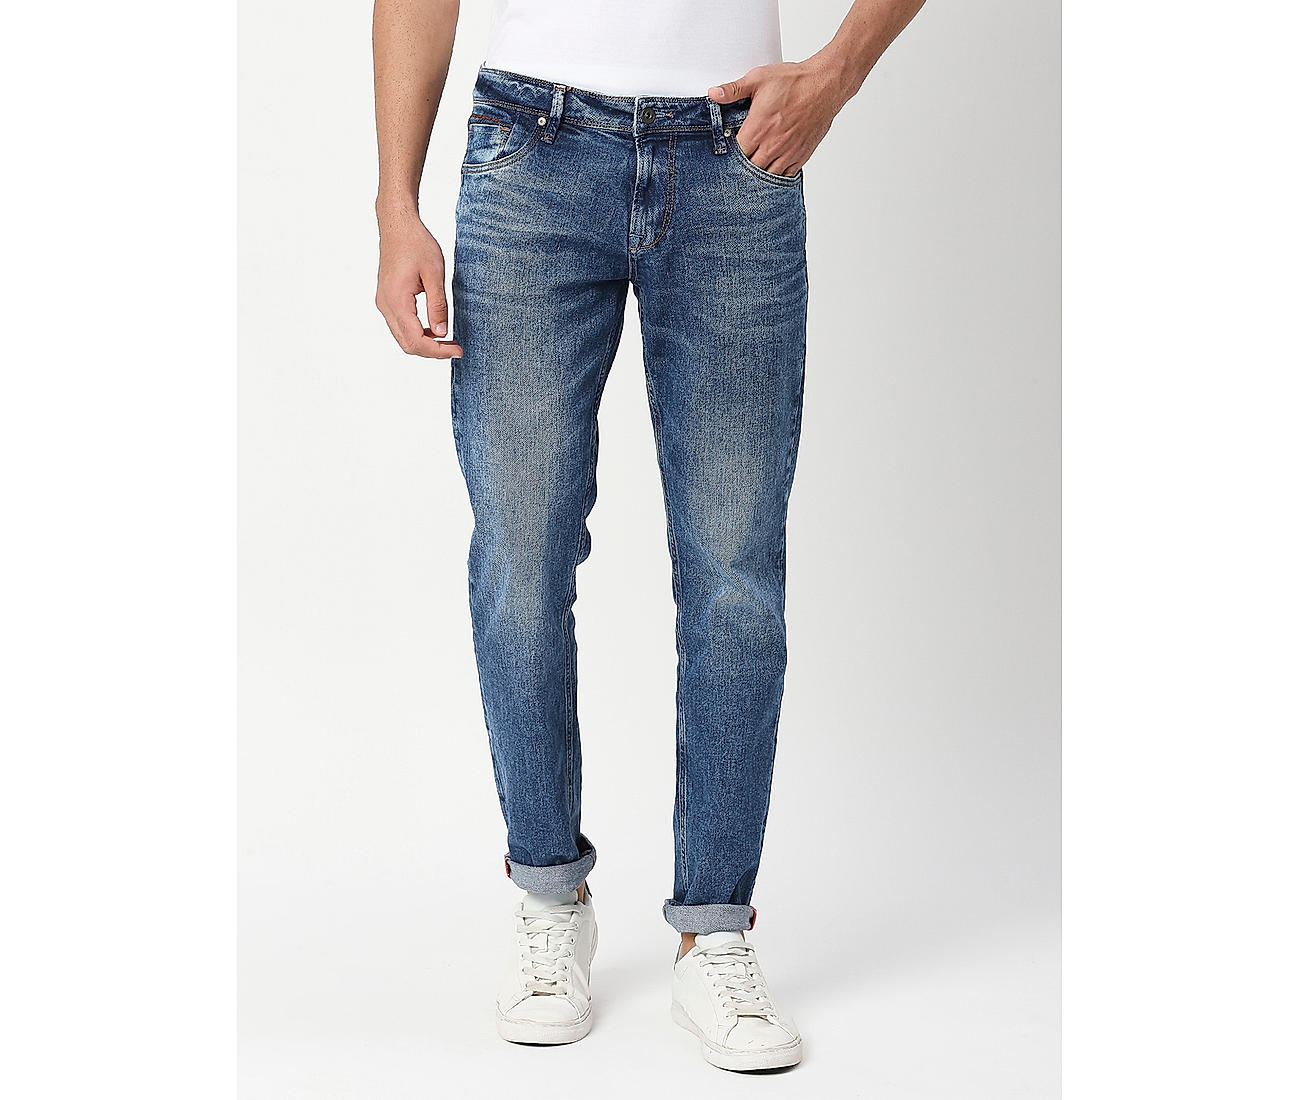 Buy Blue Solid Slim Fit Jeans for Men Online at Killer Jeans | 493134